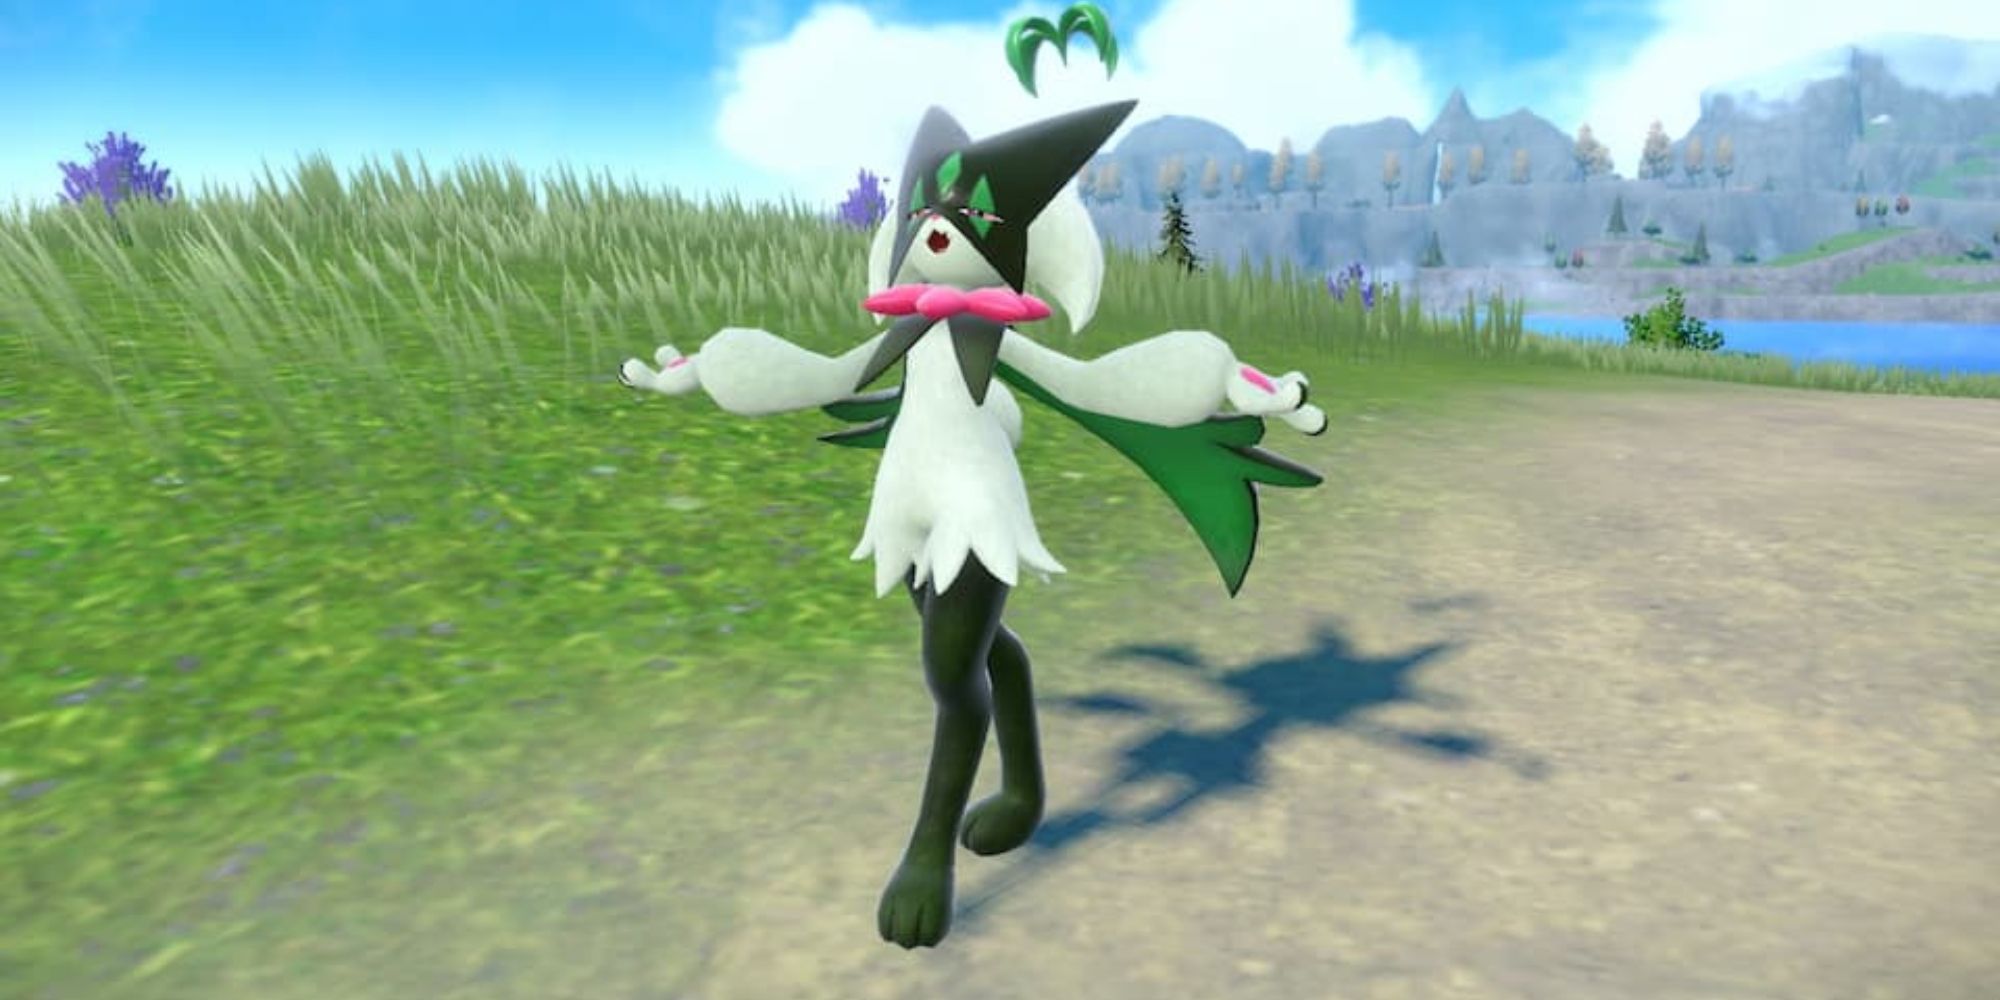 Meowscarada standing in a field Pokemon